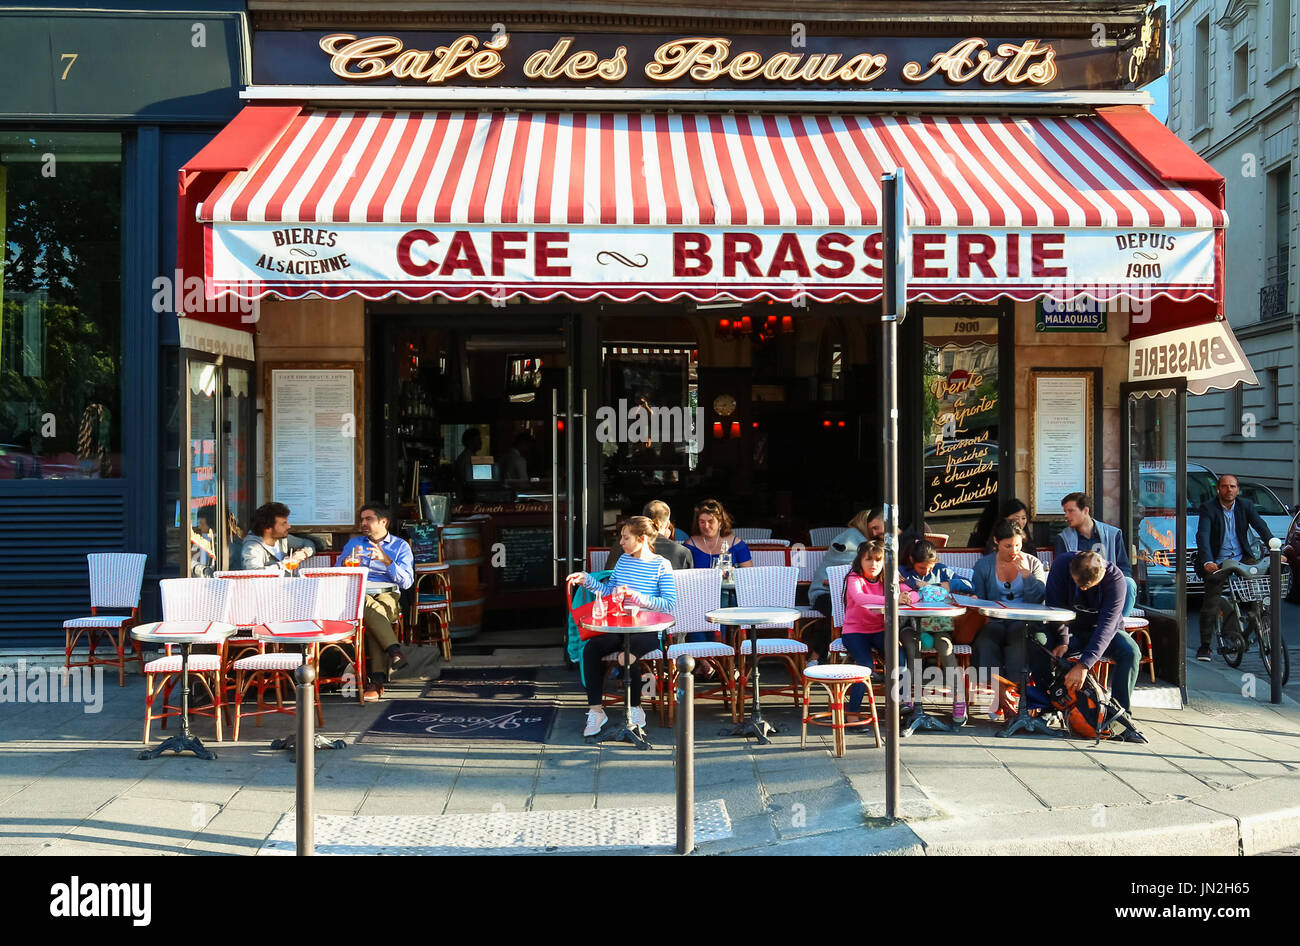 The Cafe des Beaux Arts is a typical Parisian brasserie,Paris, France. Stock Photo